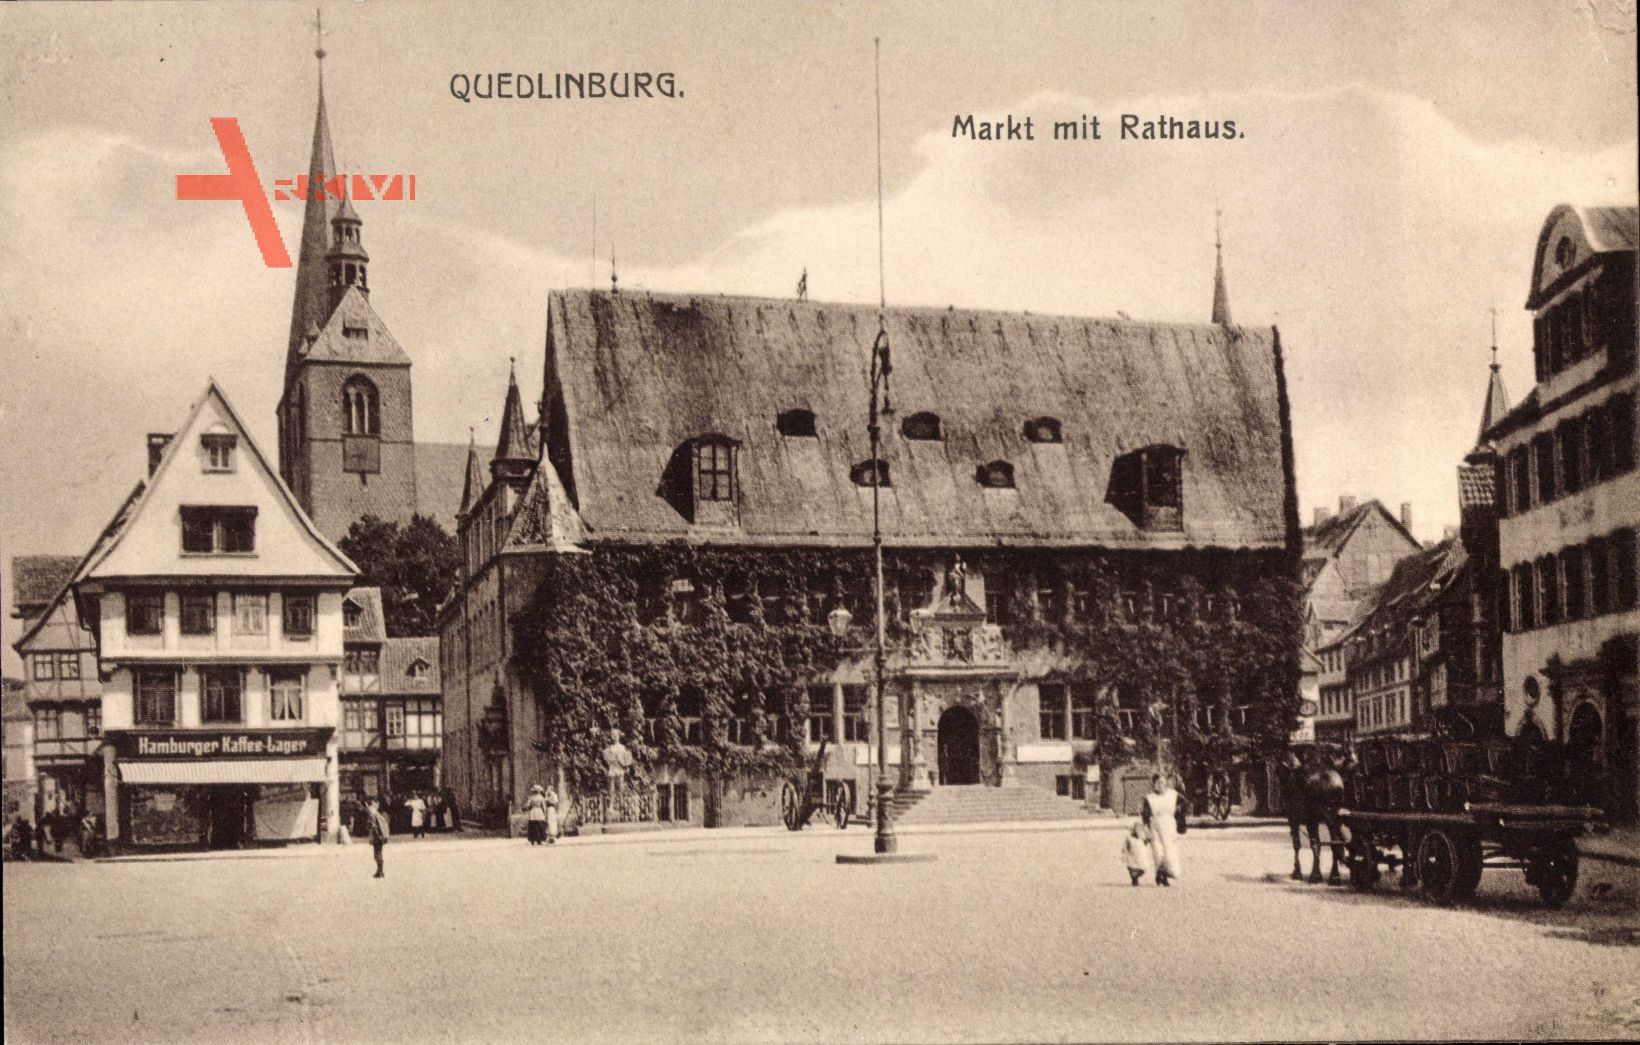 Quedlinburg im Harz, Hamburger Kaffee Lager, Markt mit Rathaus